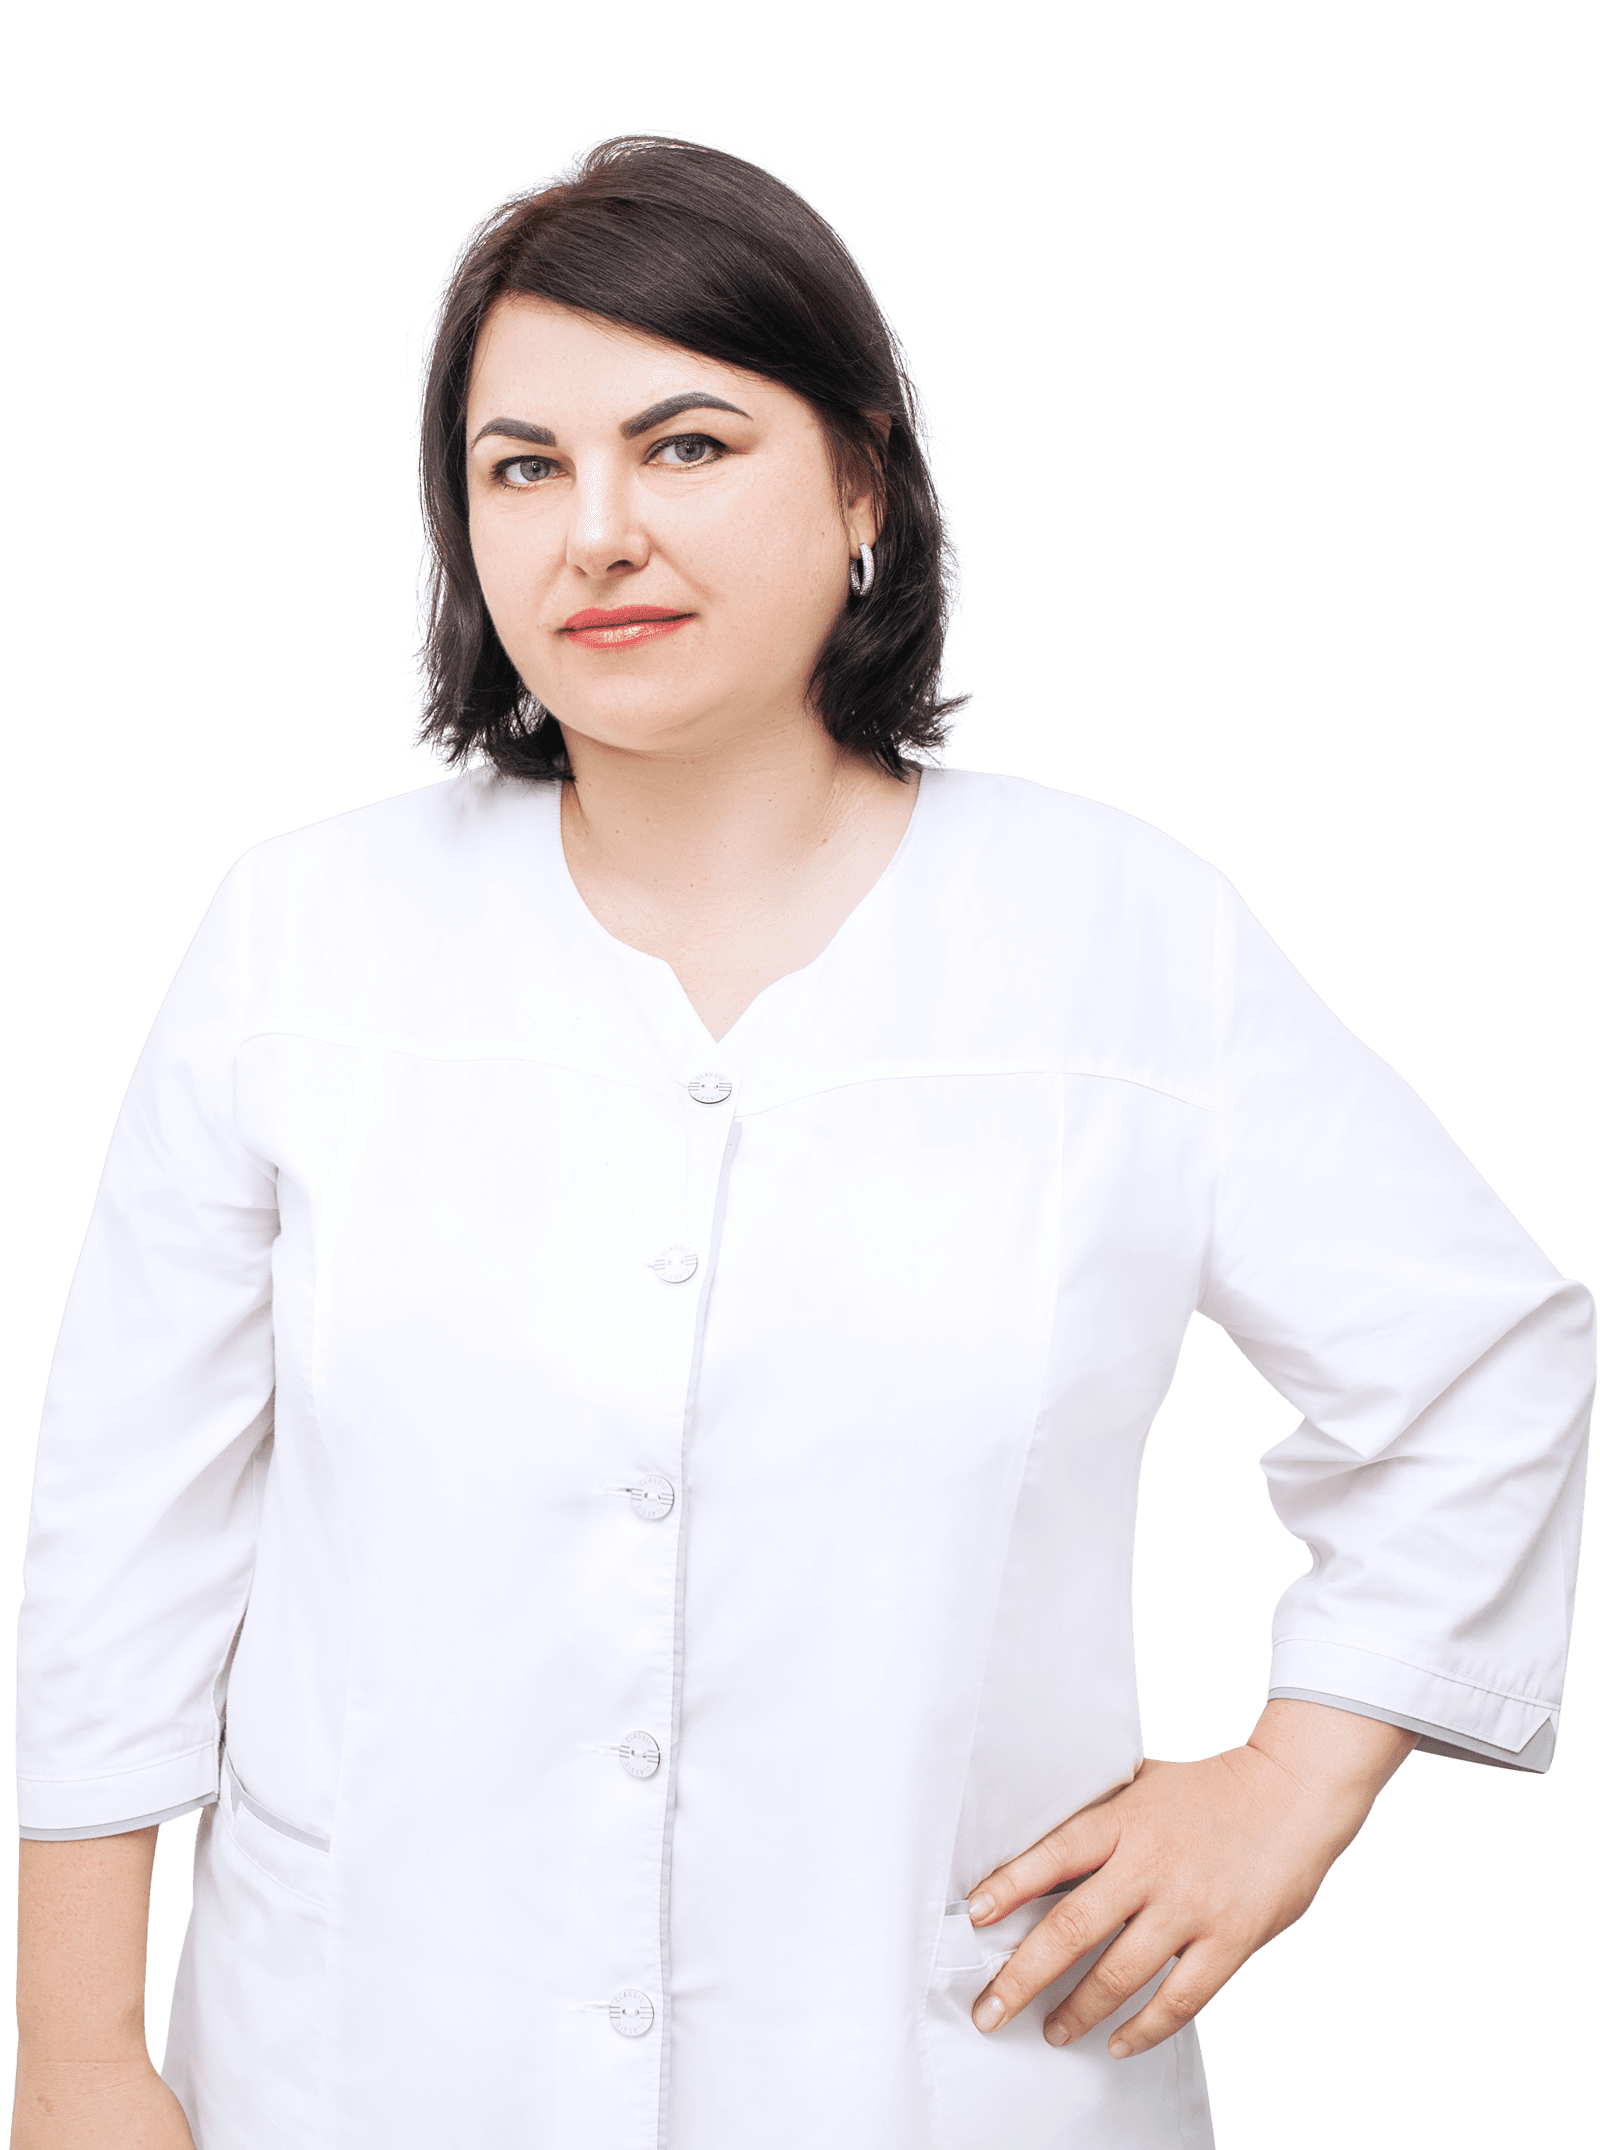 Дидиченко Юлия Александровна